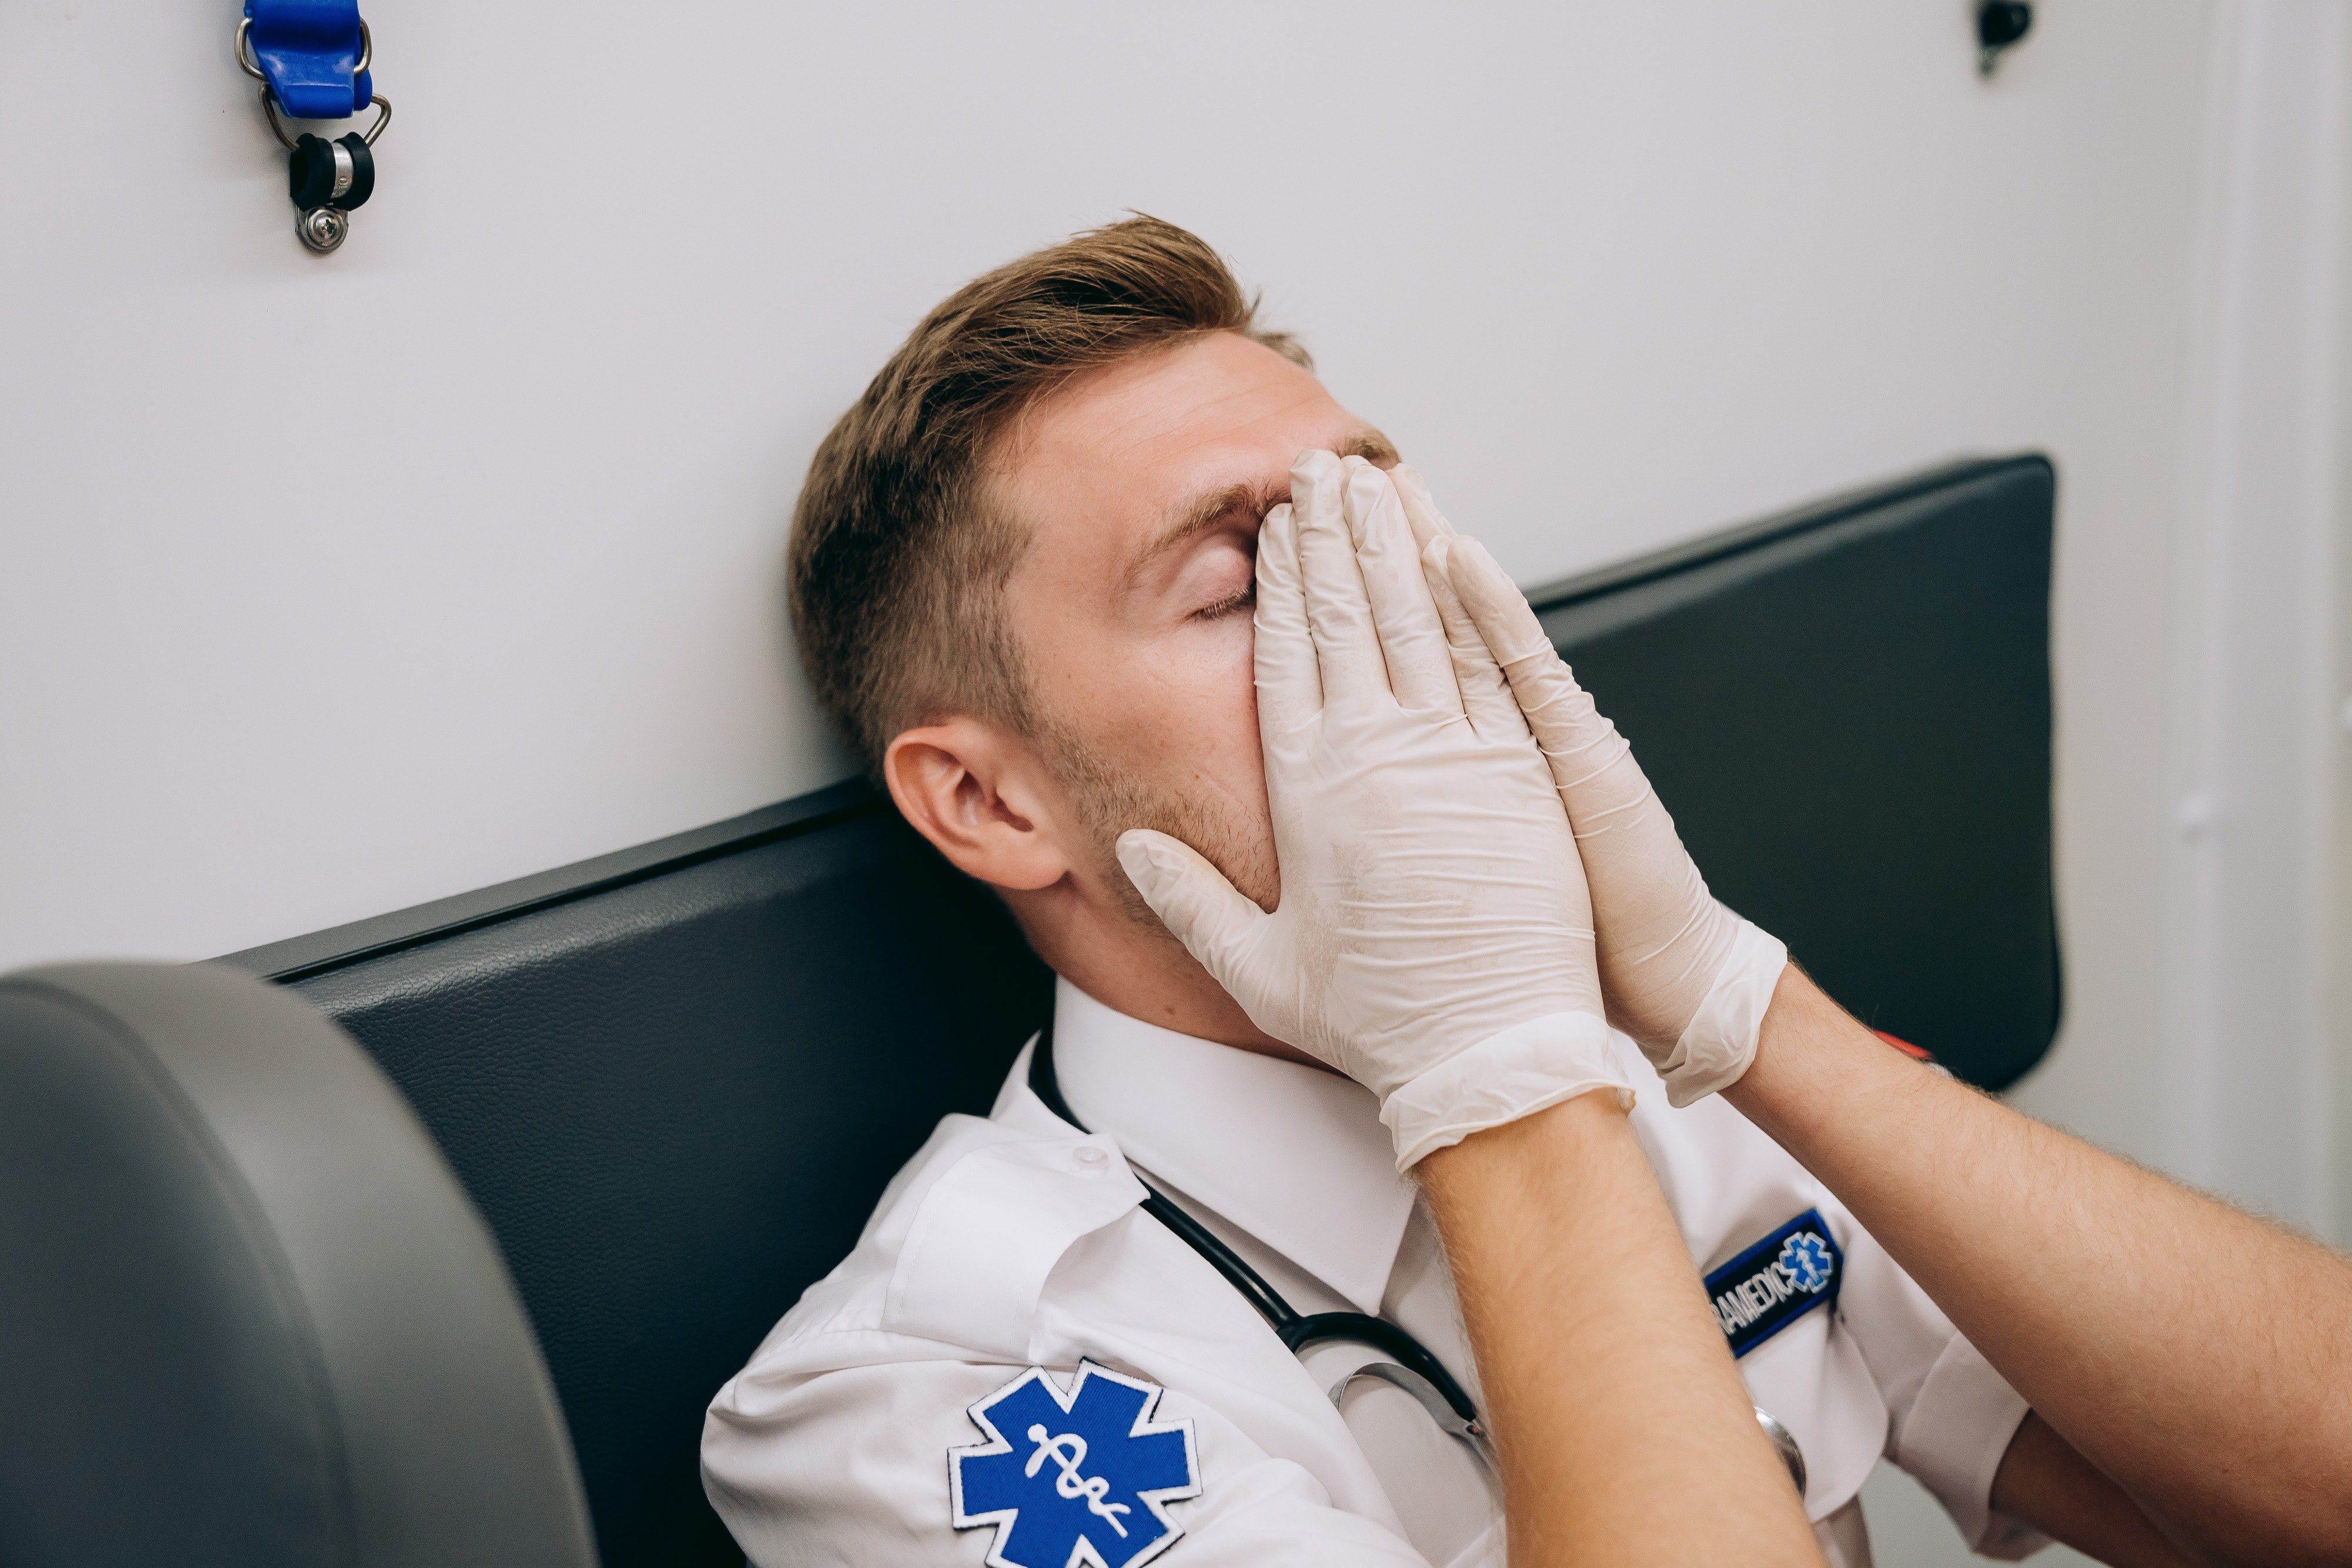 Médico pone sus manos en su rostro en gesto de agotamiento. | Foto: Pexels